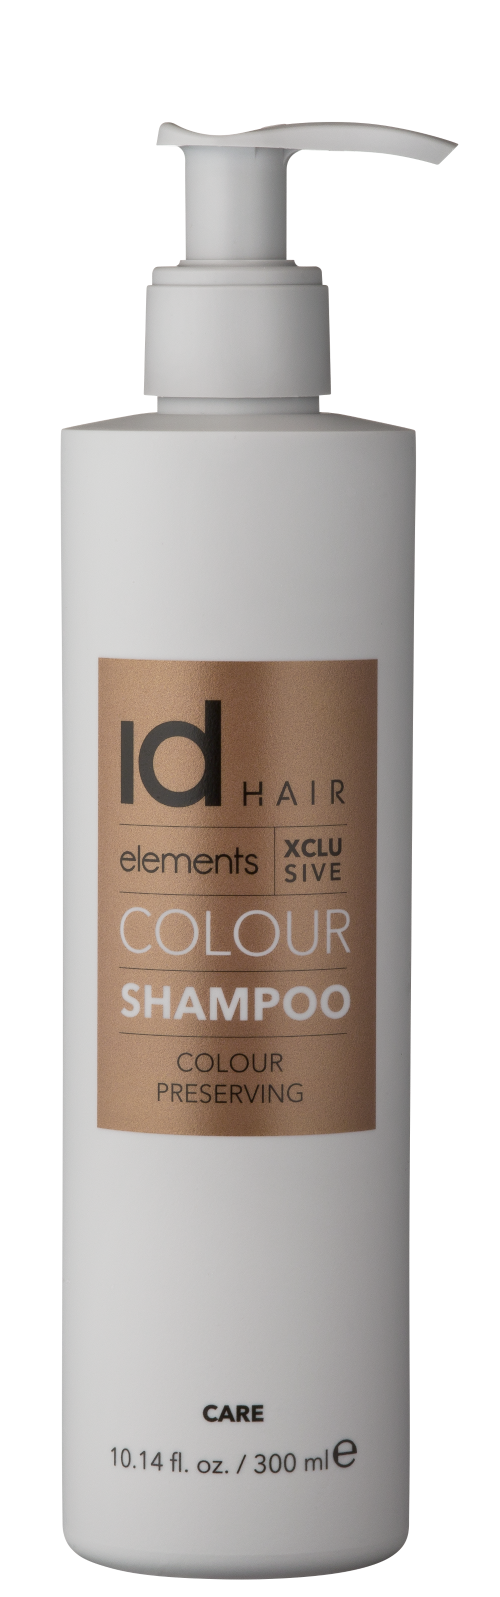 Hvid beholder med pumpe og guld logo. Id Hair Xclusive Colour Shampoo.